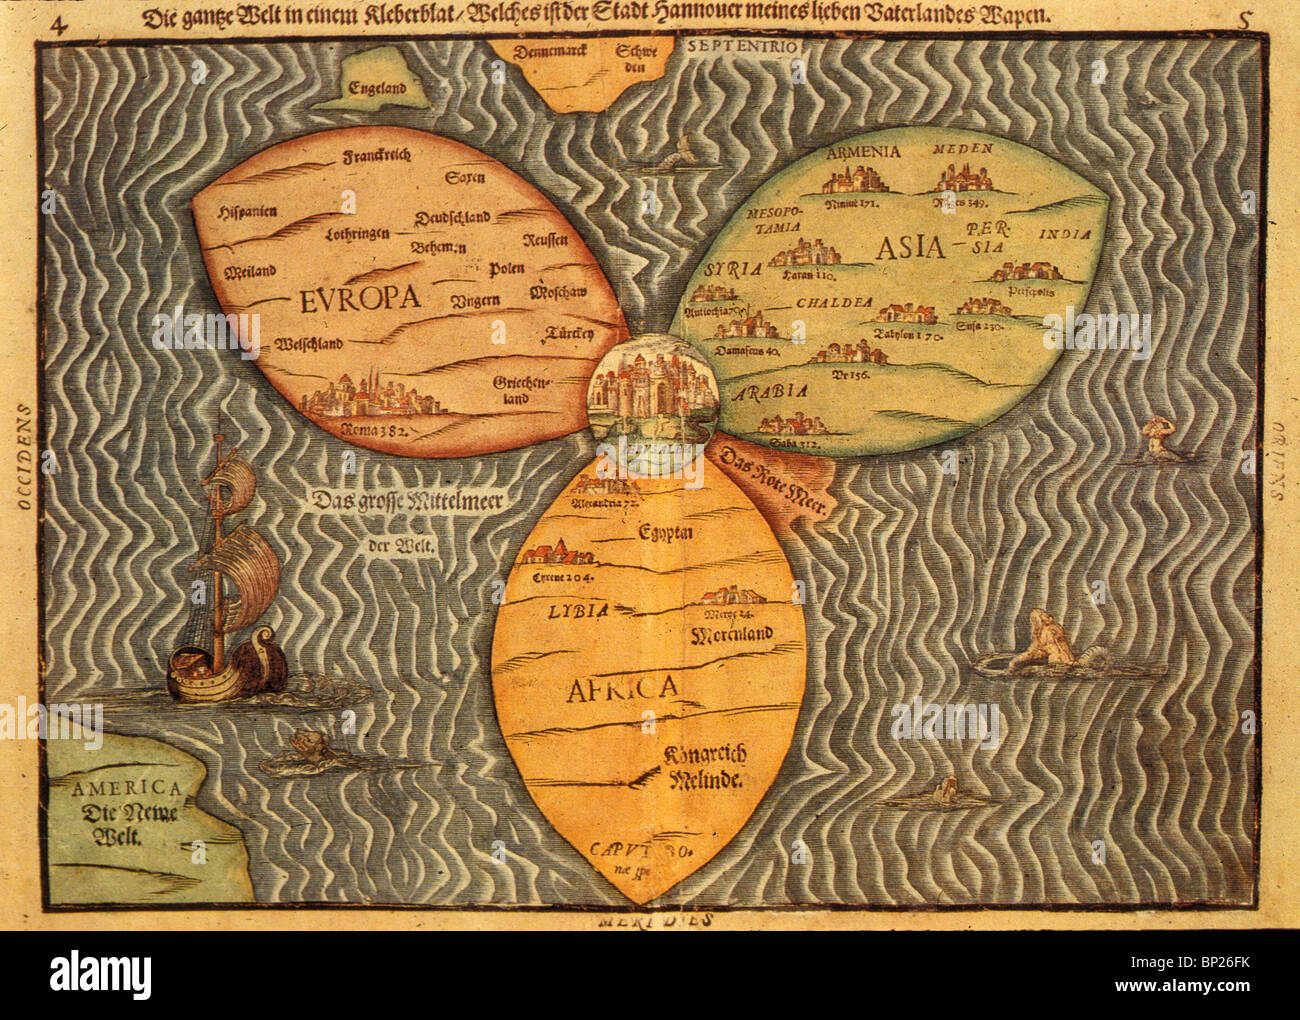 1059. WELTKARTE MIT JERUSALEM IM ZENTRUM, H. BUNTING, 'ITINERARIUM SACRAE SCRIPTUARE' 1581 Stockfoto